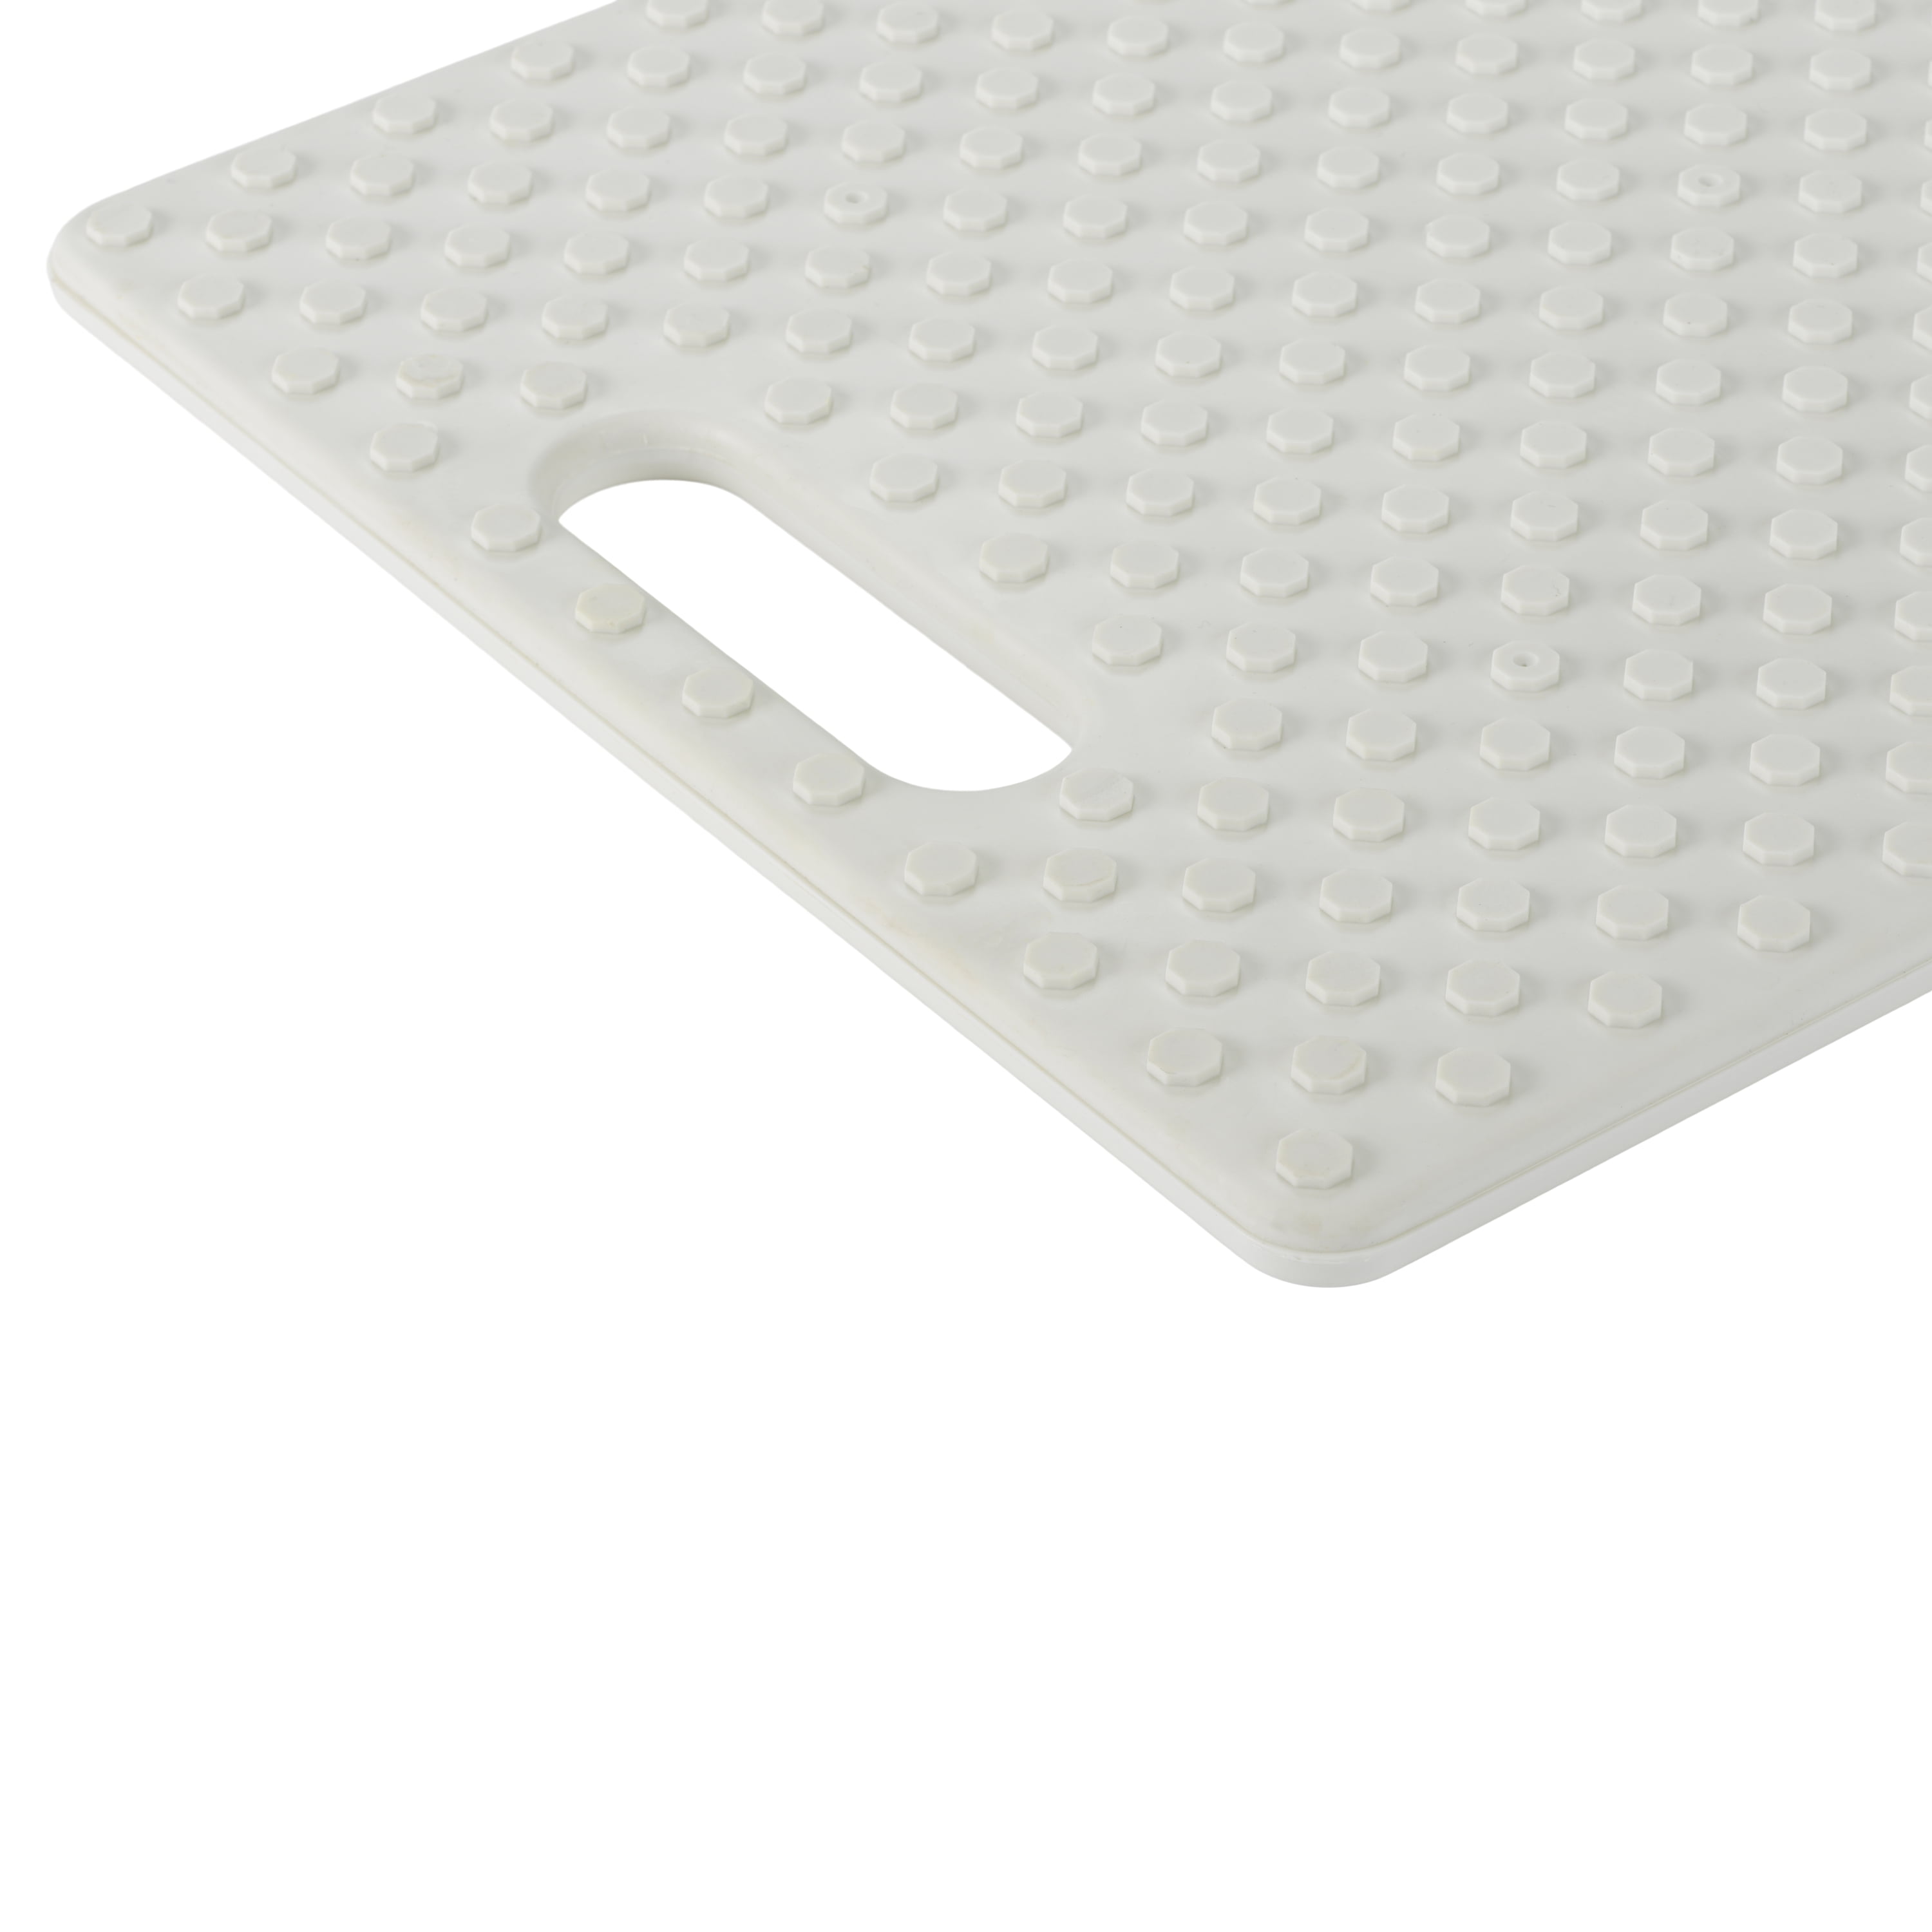 Architec Gripper Polypropylene BPA Free Cutting Board, 11 x 14 Inch, Gray